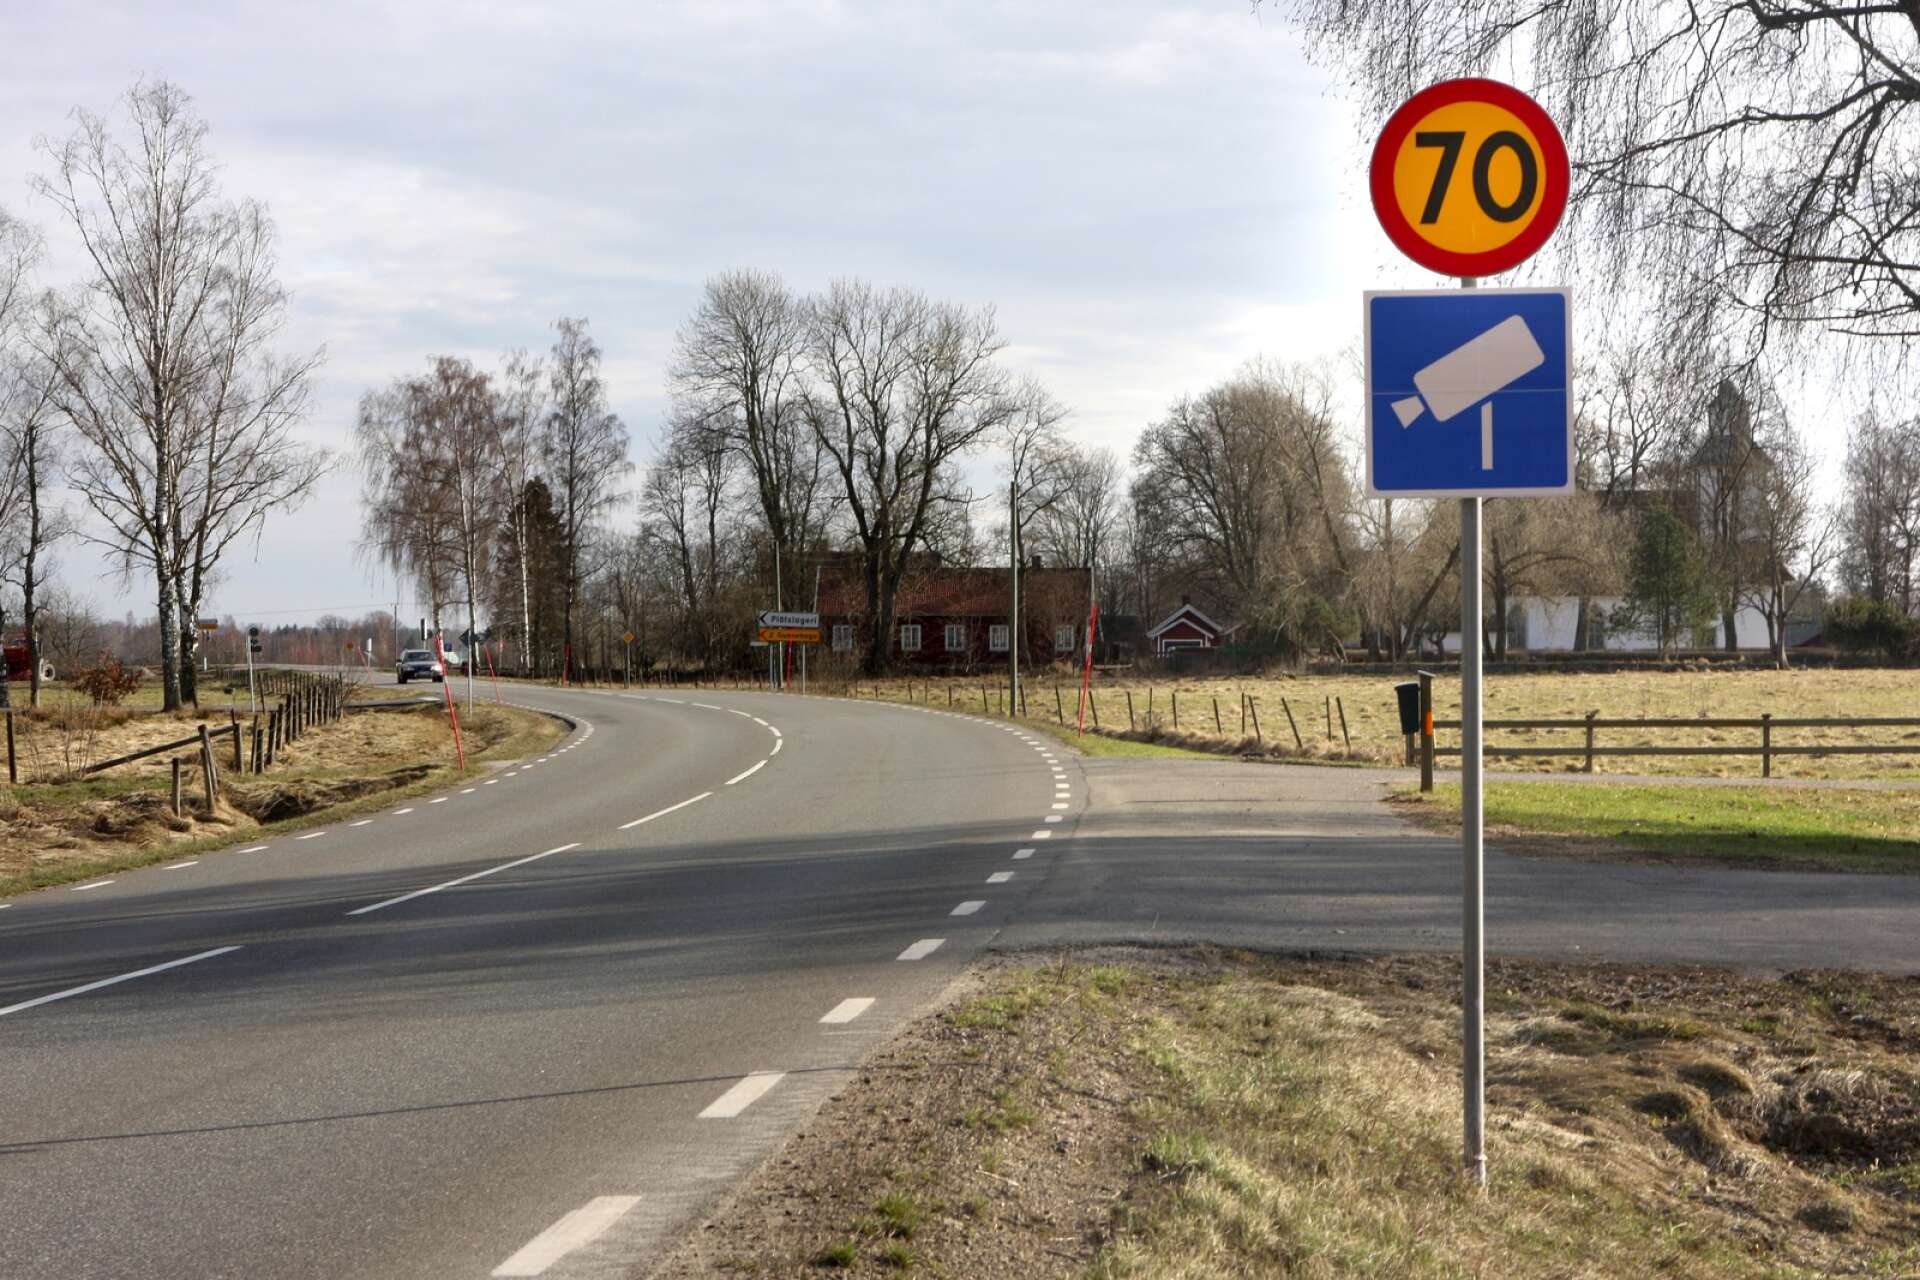 En man åtalas för att ha kört 78 km/h på en väg där högsta tillåtna hastighet var 70 km/h.